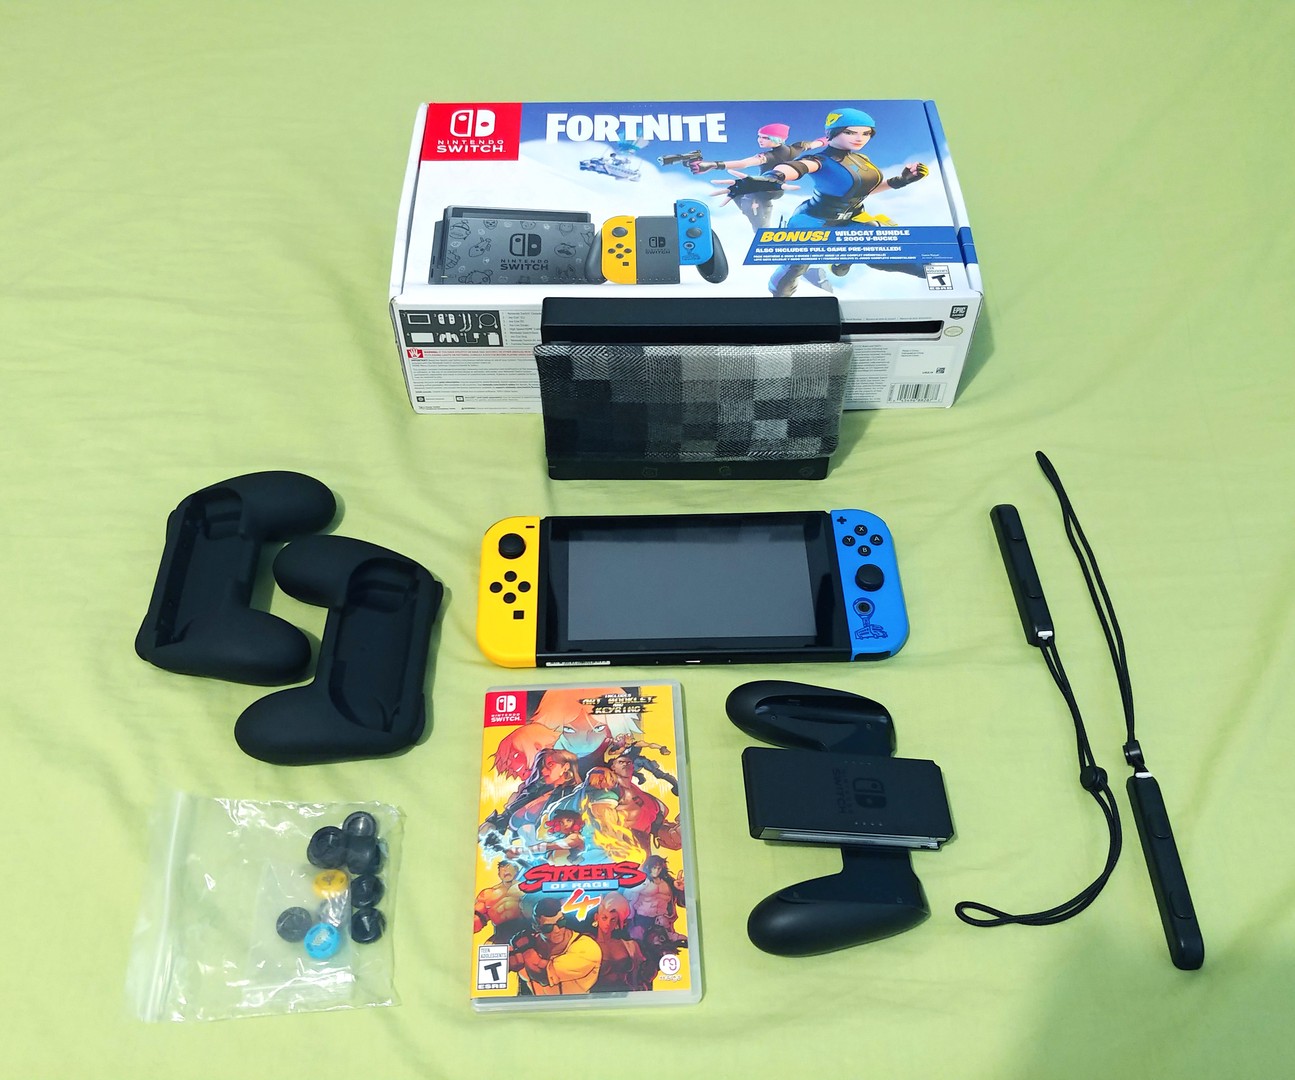 consolas y videojuegos - Vendo Nintendo Switch Edición Fornite (Nuevo) + Extras